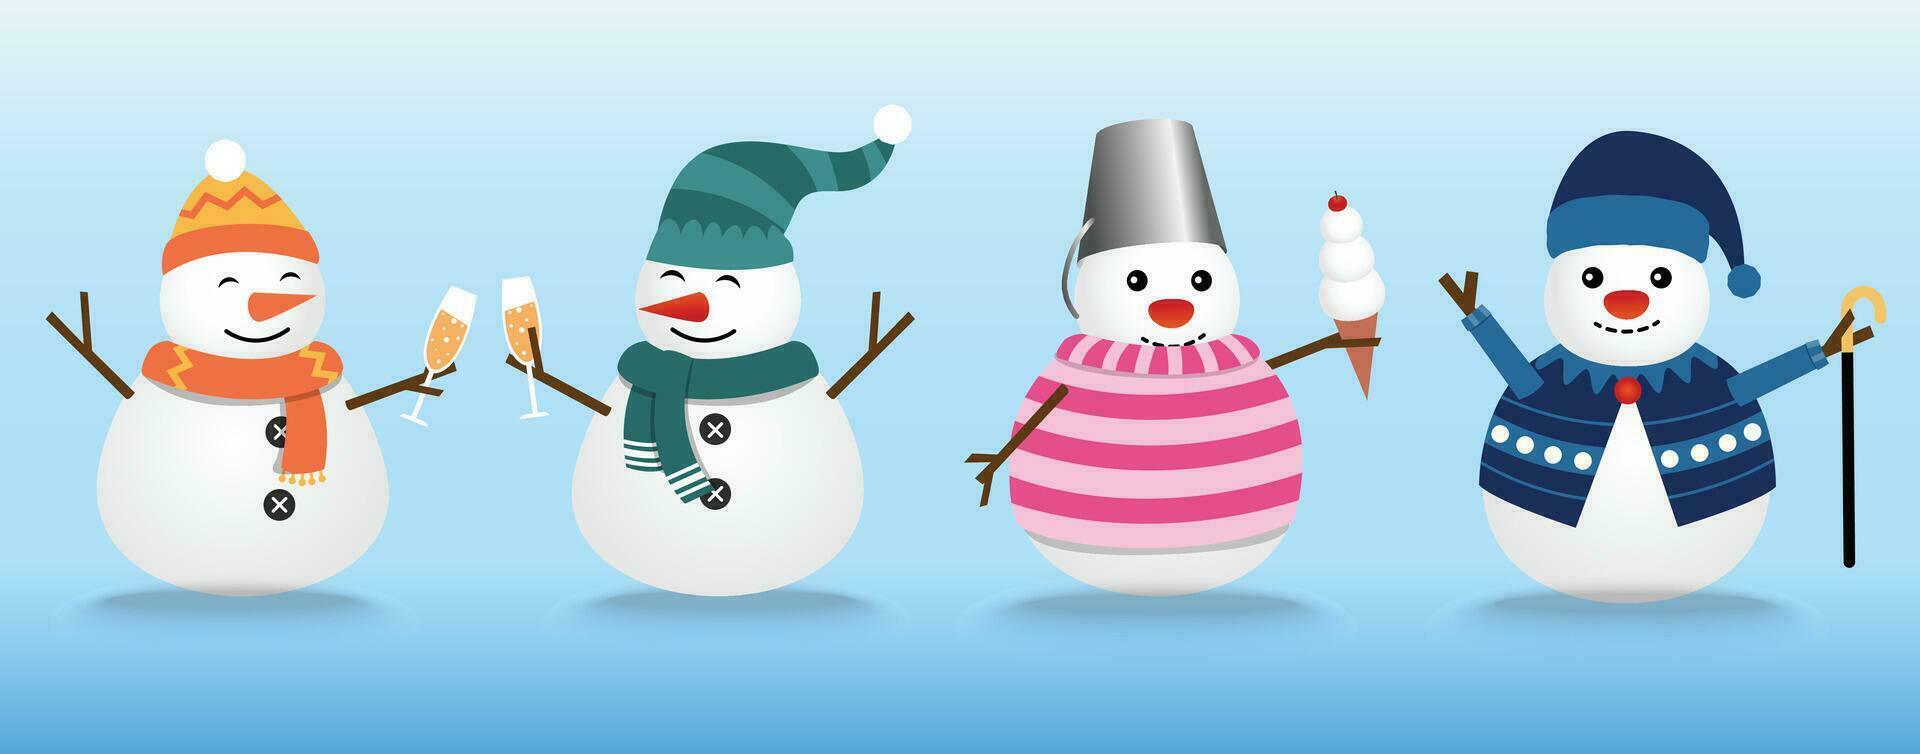 el colección de muñecos de nieve usa el invierno tema. gráfico recurso acerca de invierno y Navidad para contenido, monigote de nieve con champán, hielo crema, y palo. vector ilustración.